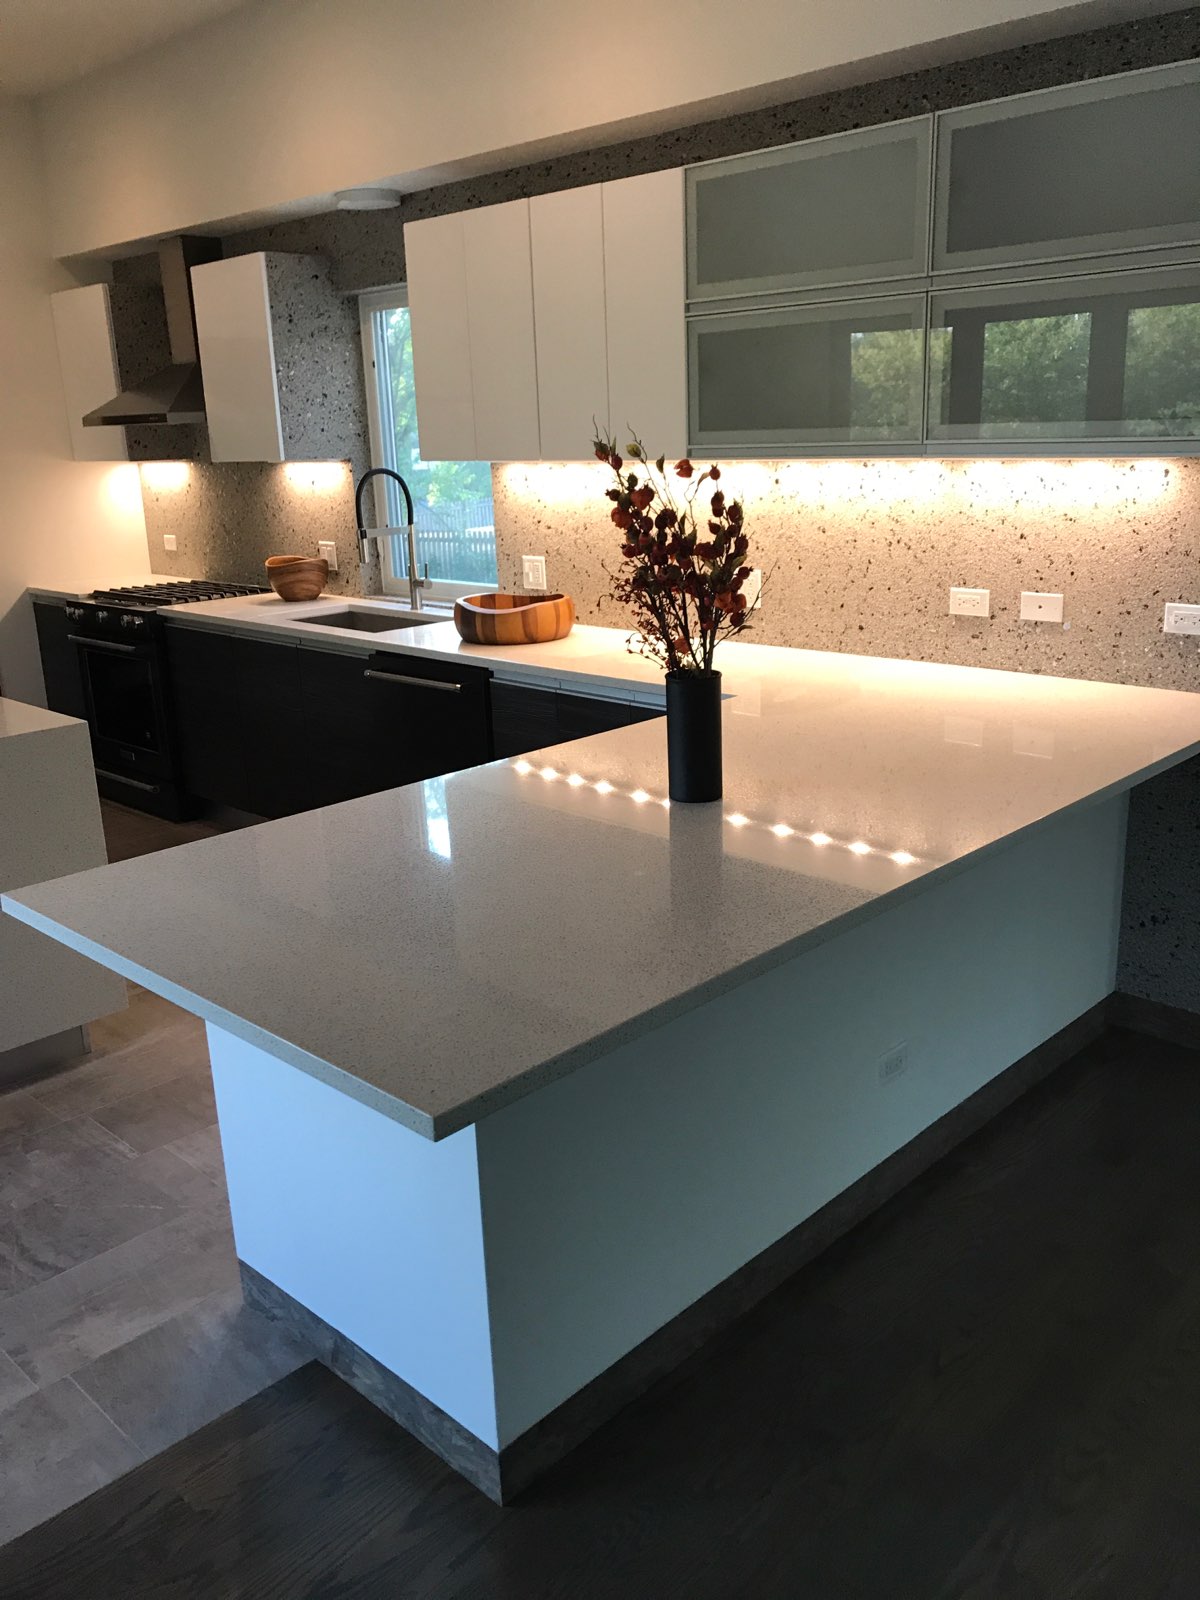 white&black kitchen with quartz countertops